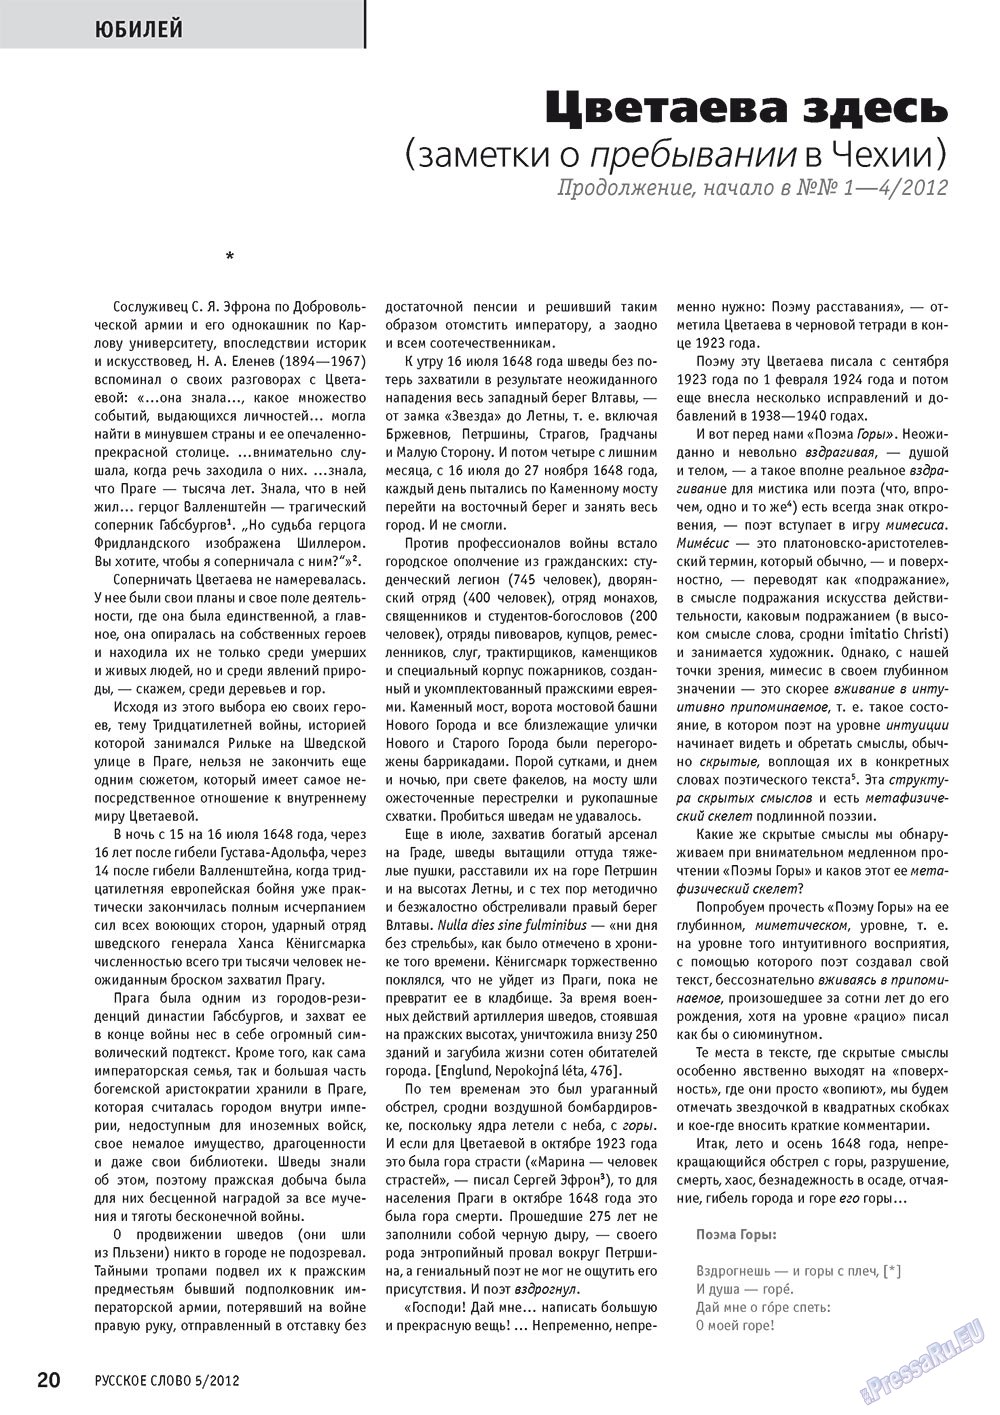 Русское слово (журнал). 2012 год, номер 5, стр. 20